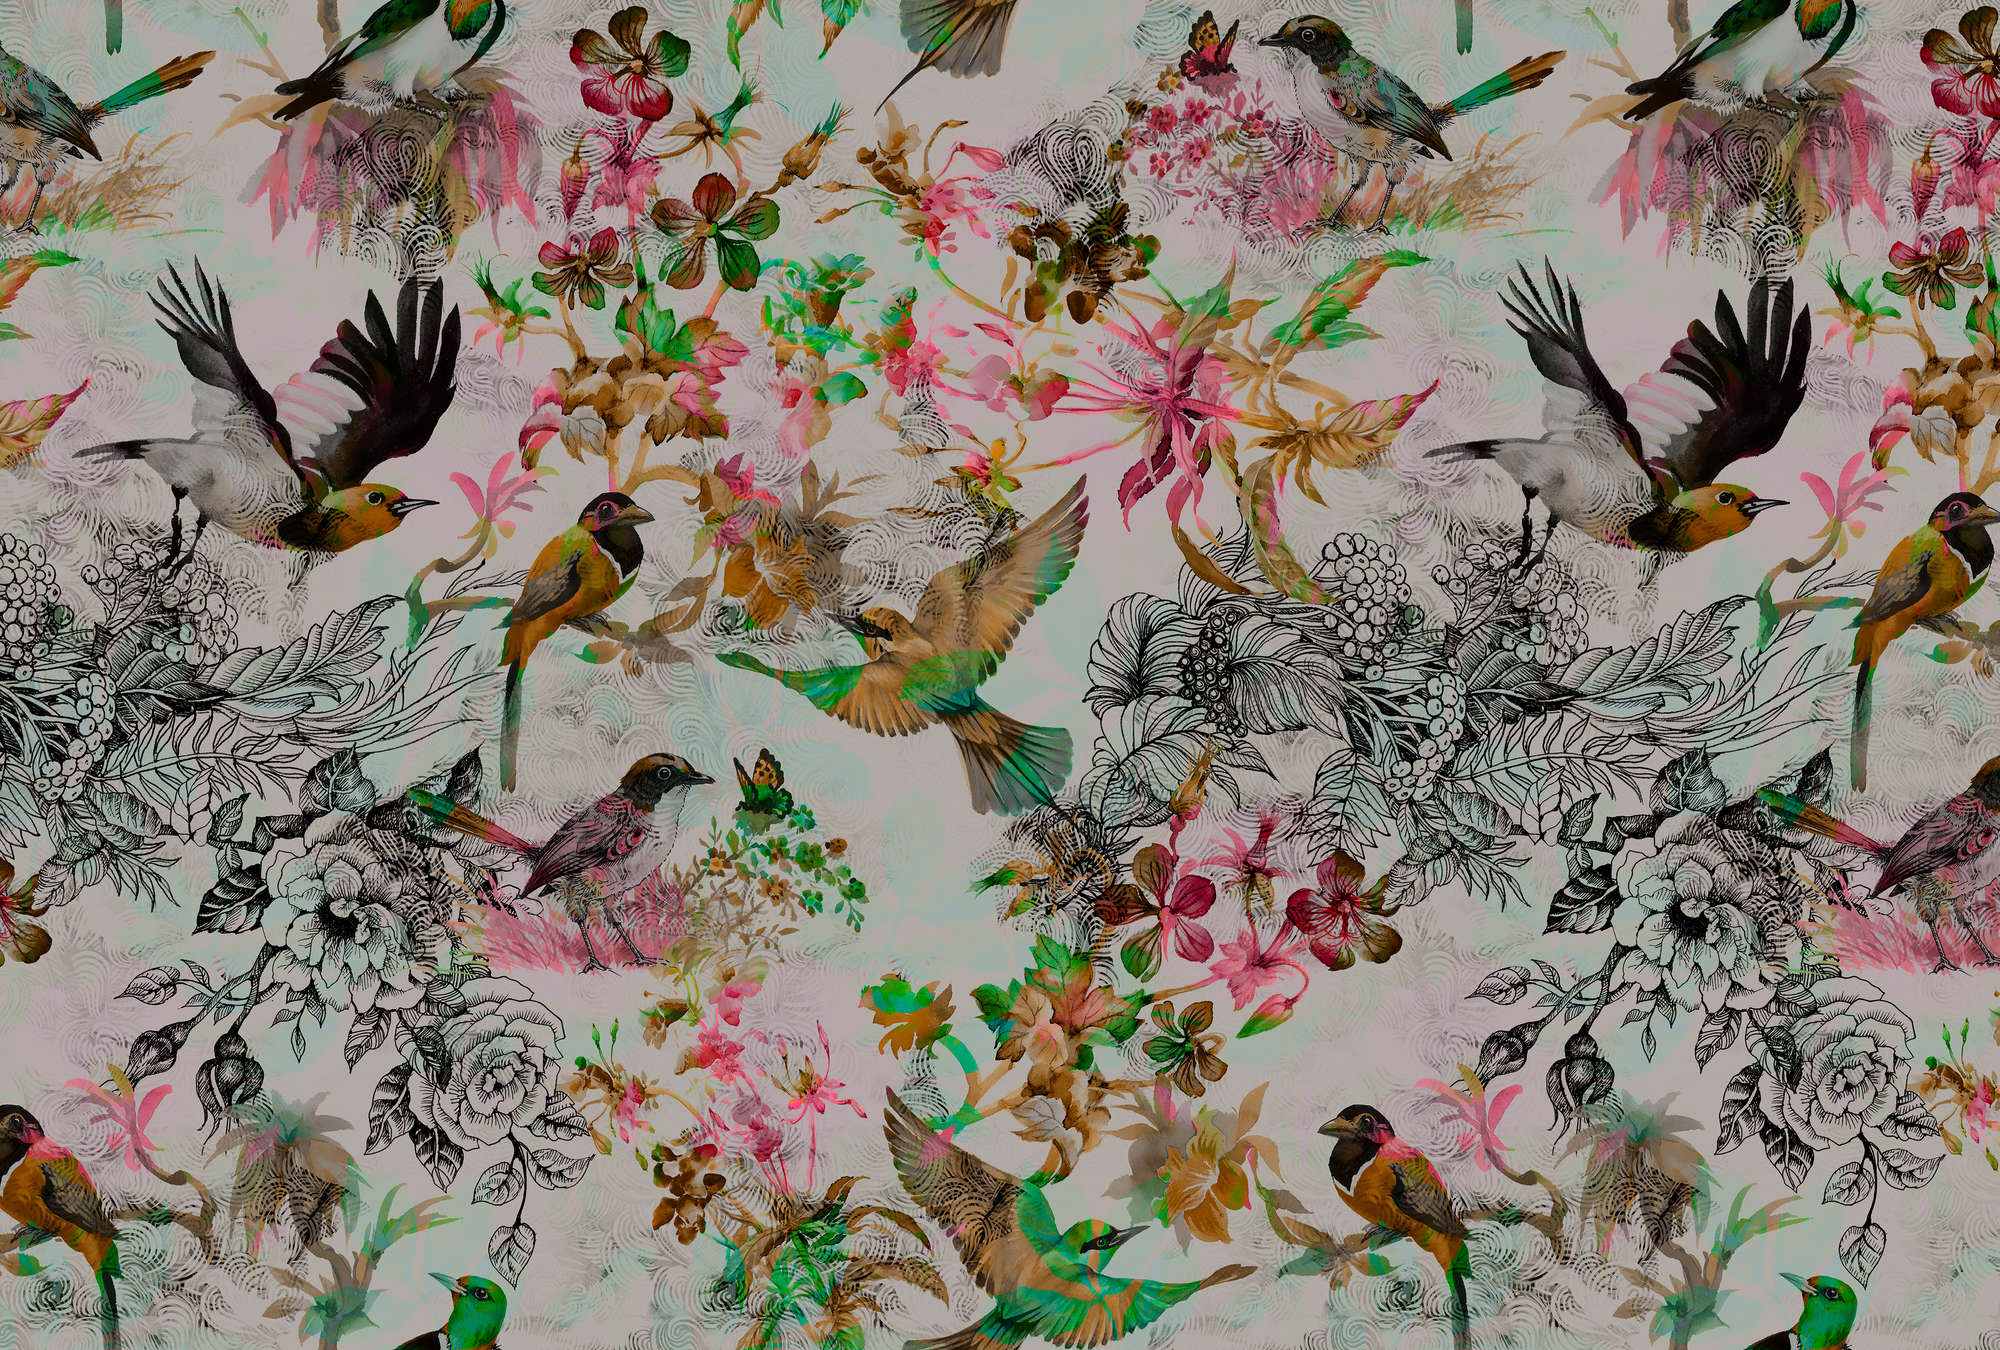             Papier peint oiseaux & fleurs style collage - gris, rose
        